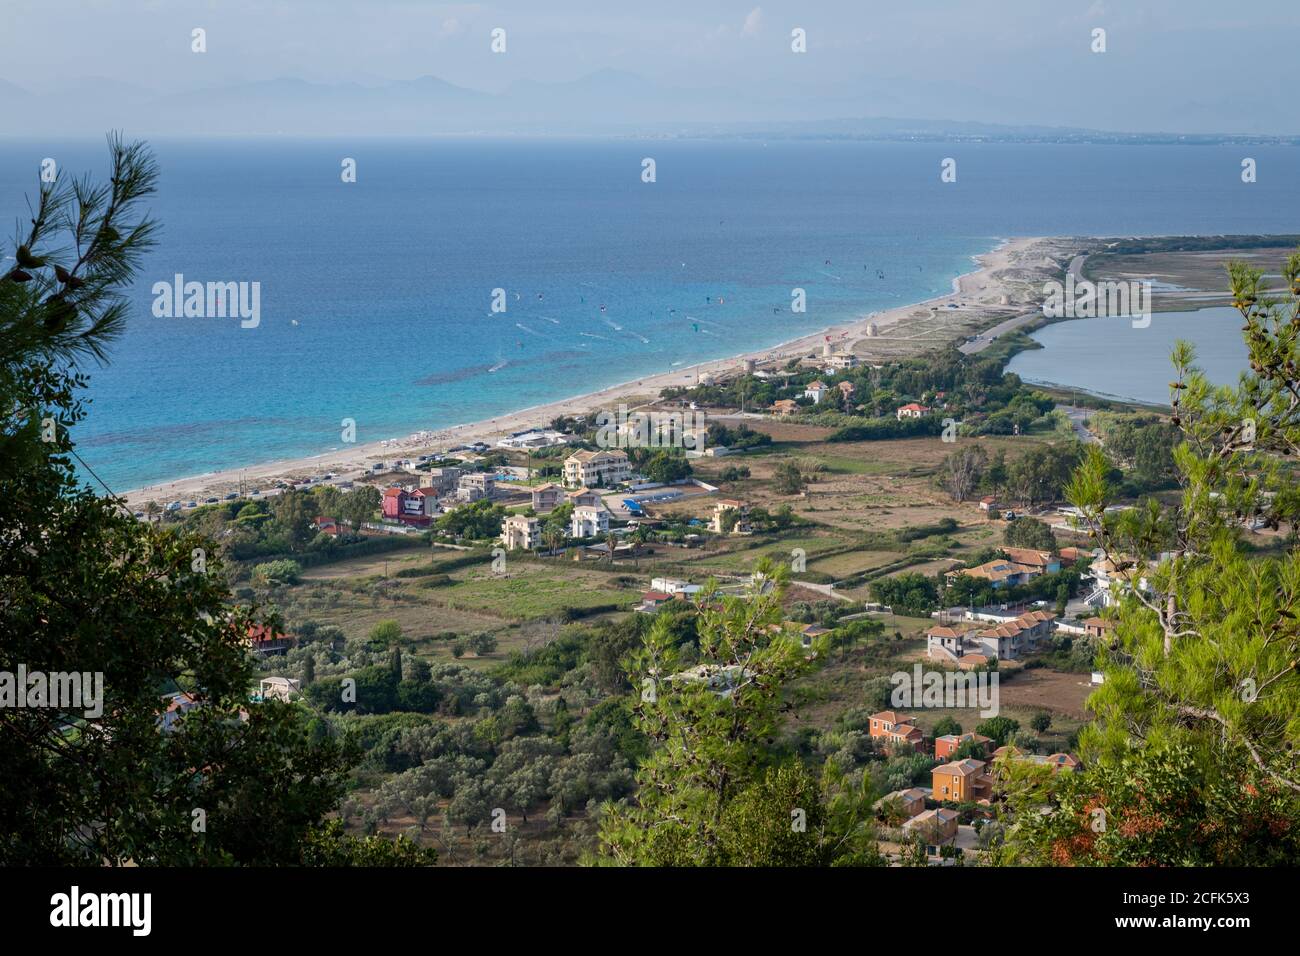 Una vista sulla collina della spiaggia di Agios Ioannis a Gyra, il luogo ideale per il kite surf su questa isola Ionica greca. Foto Stock